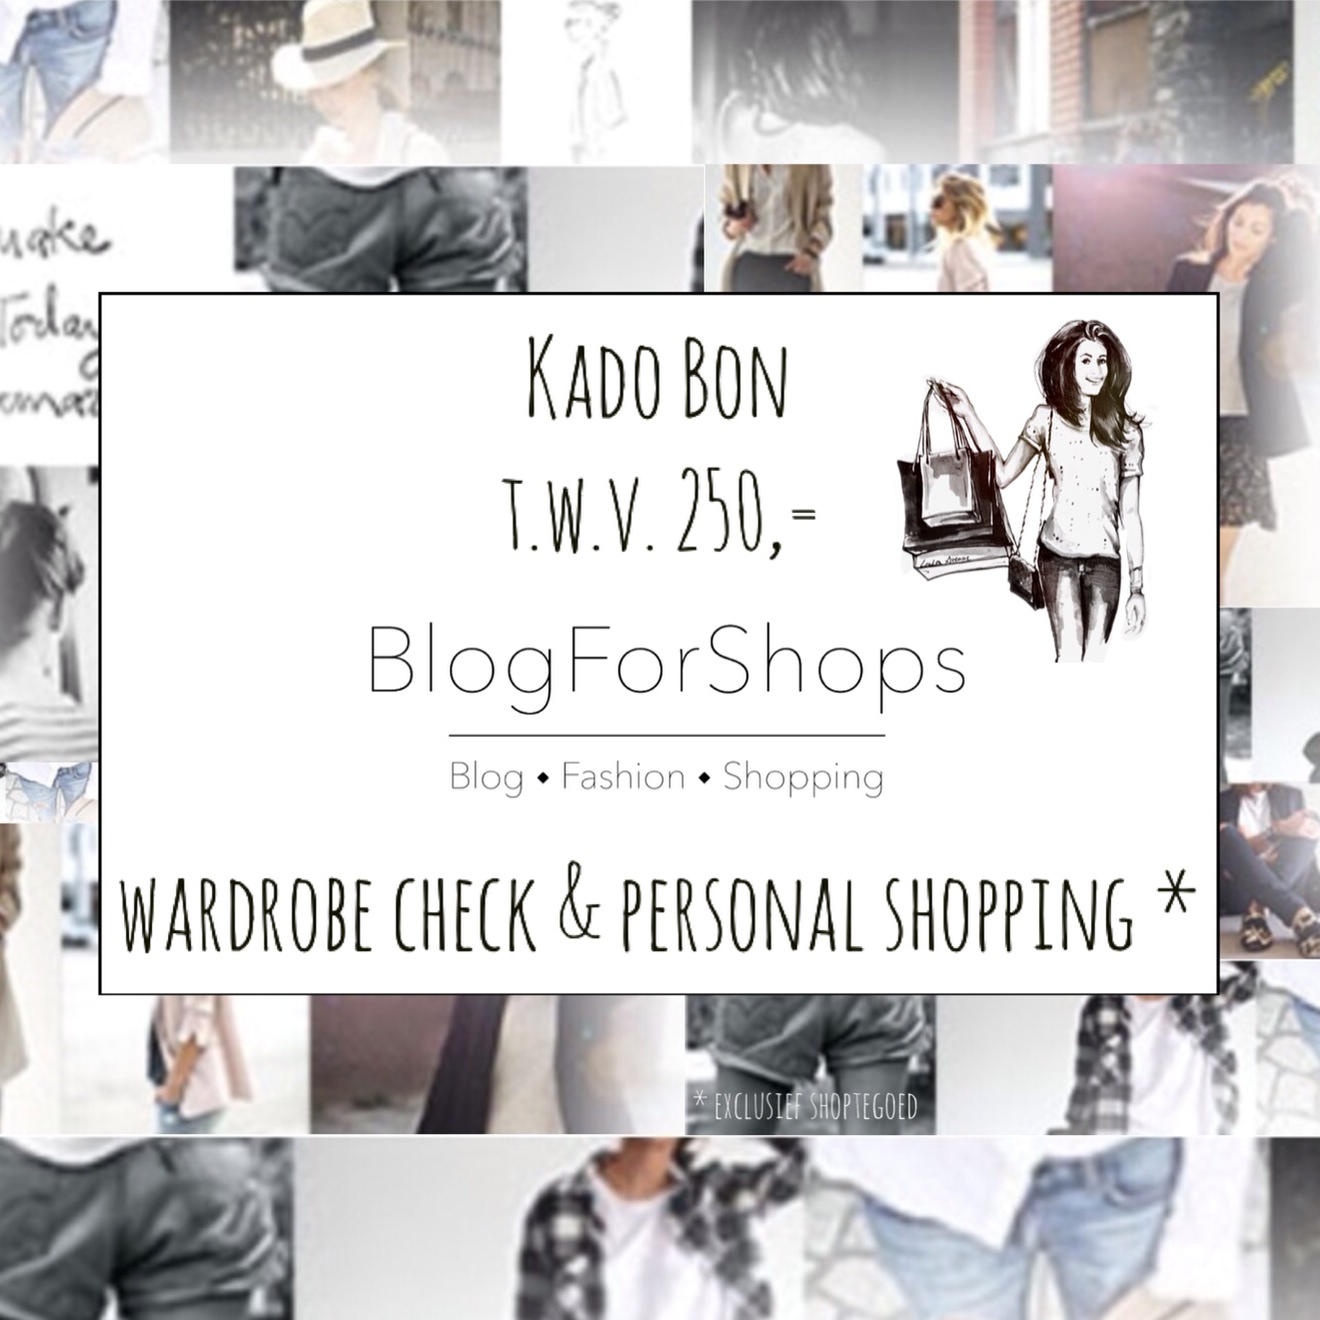  personal shopping kadobon BlogForShops 